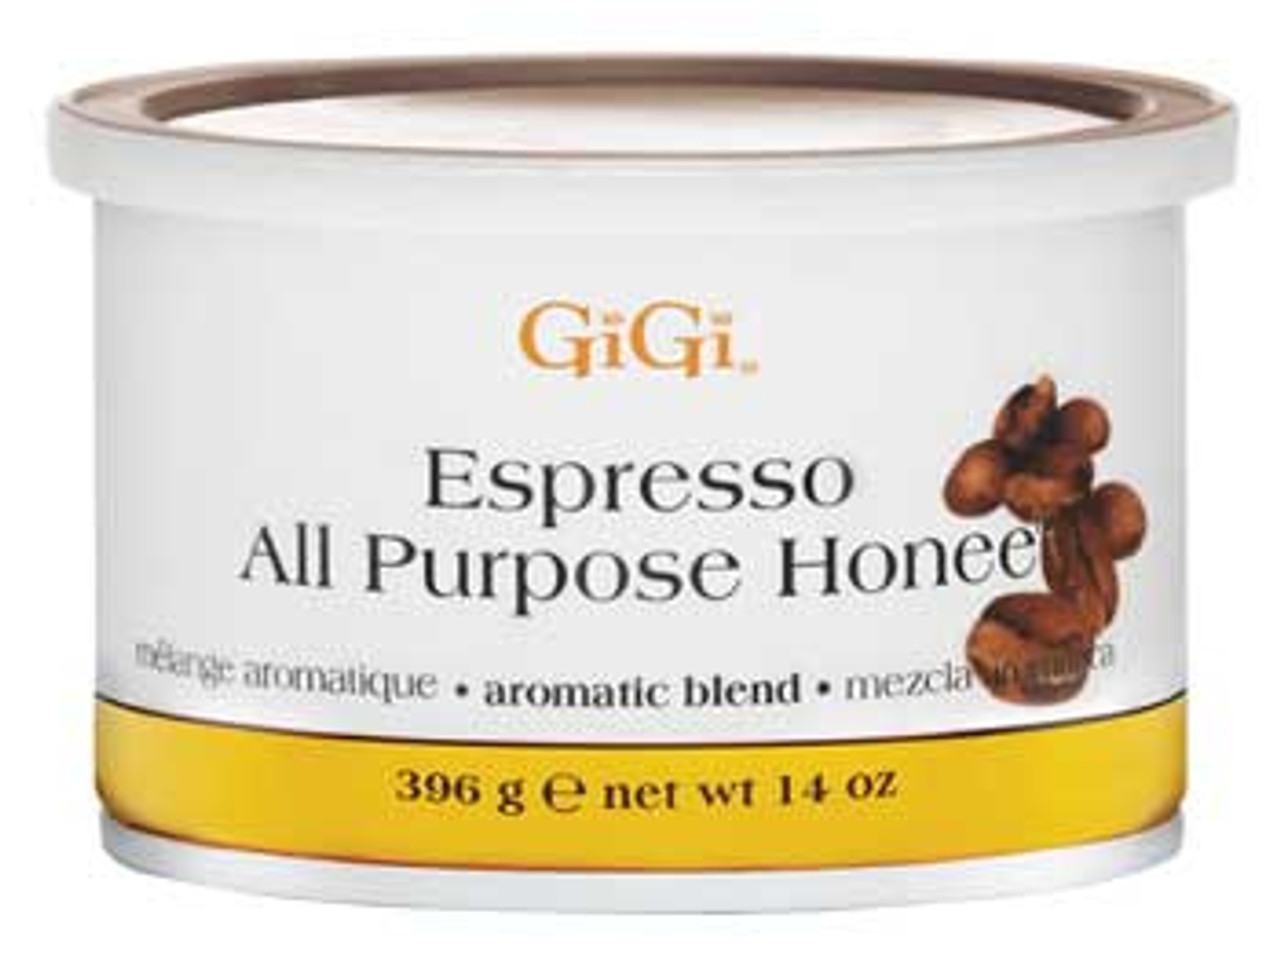 GiGi Espresso All Purpose Honee - 14oz - G0252